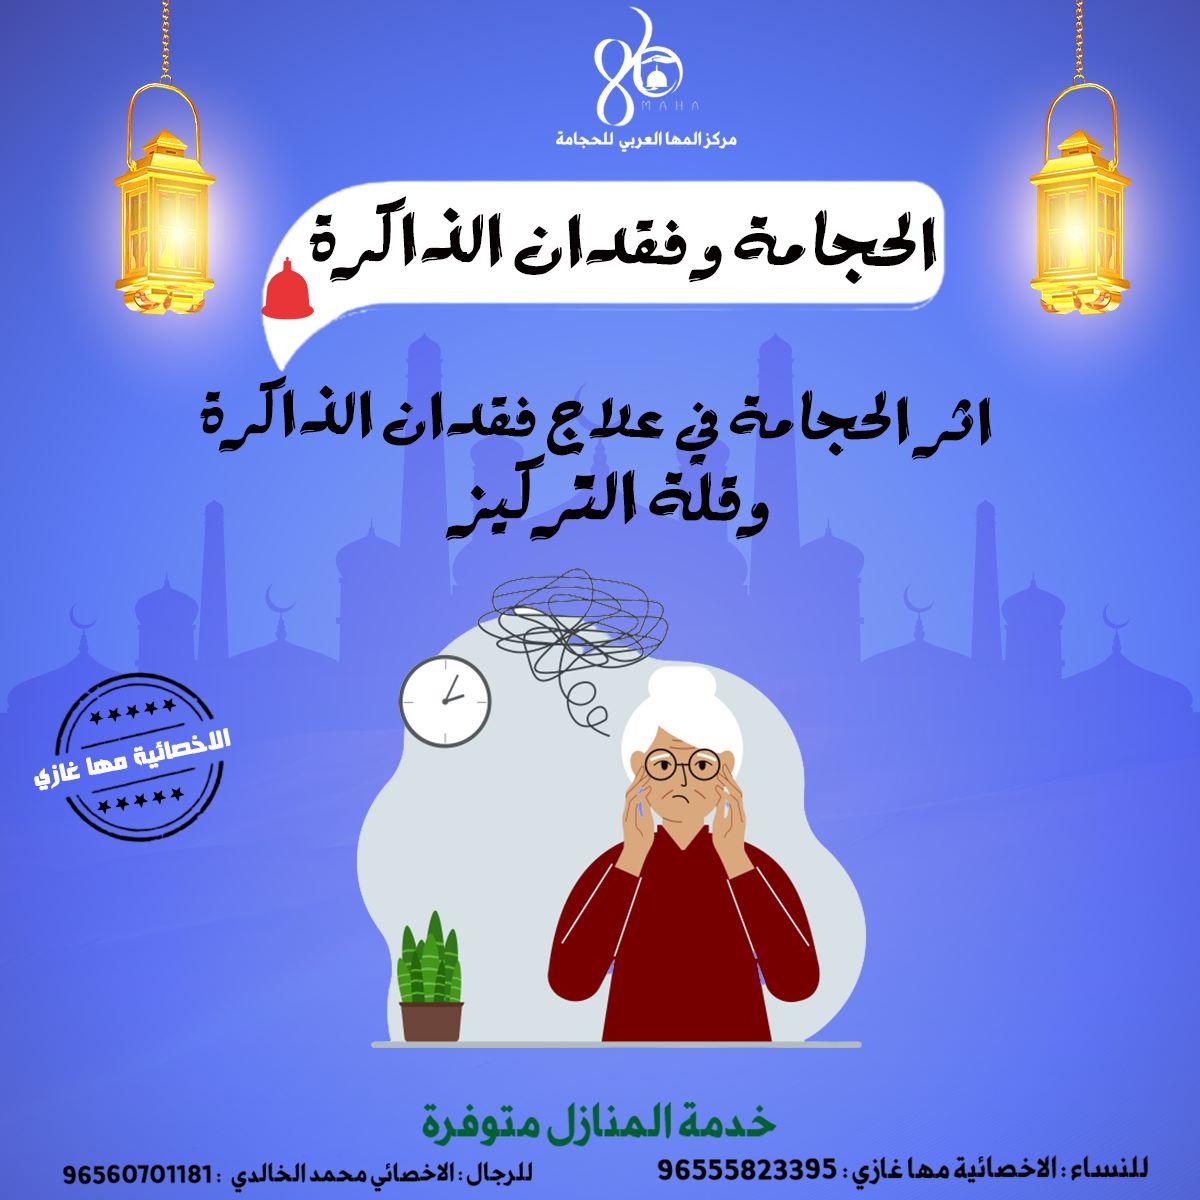 مجموعة المها العربي للحجامه الكويت